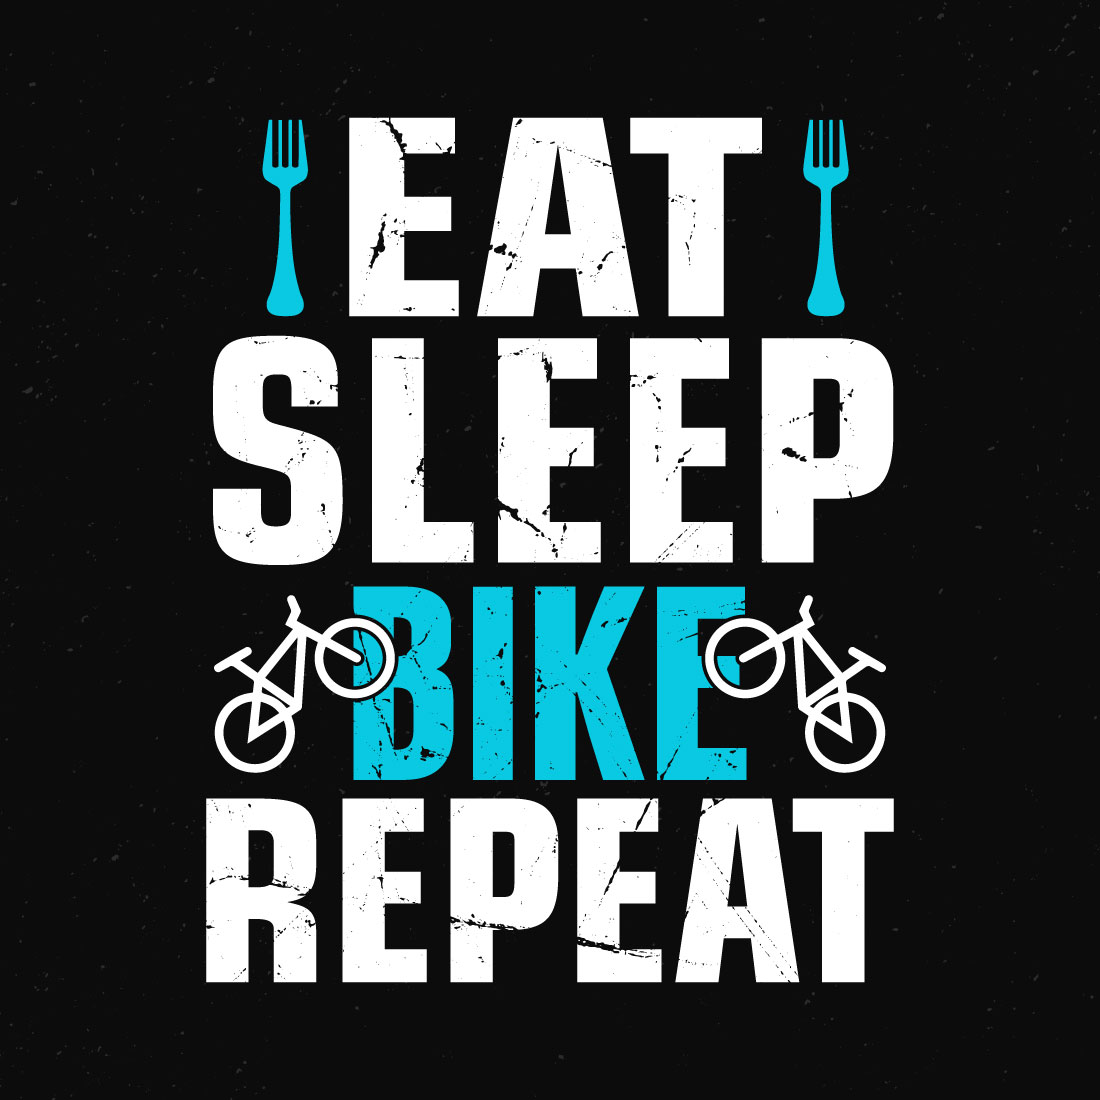 Eat sleep bike repeat on a black background.